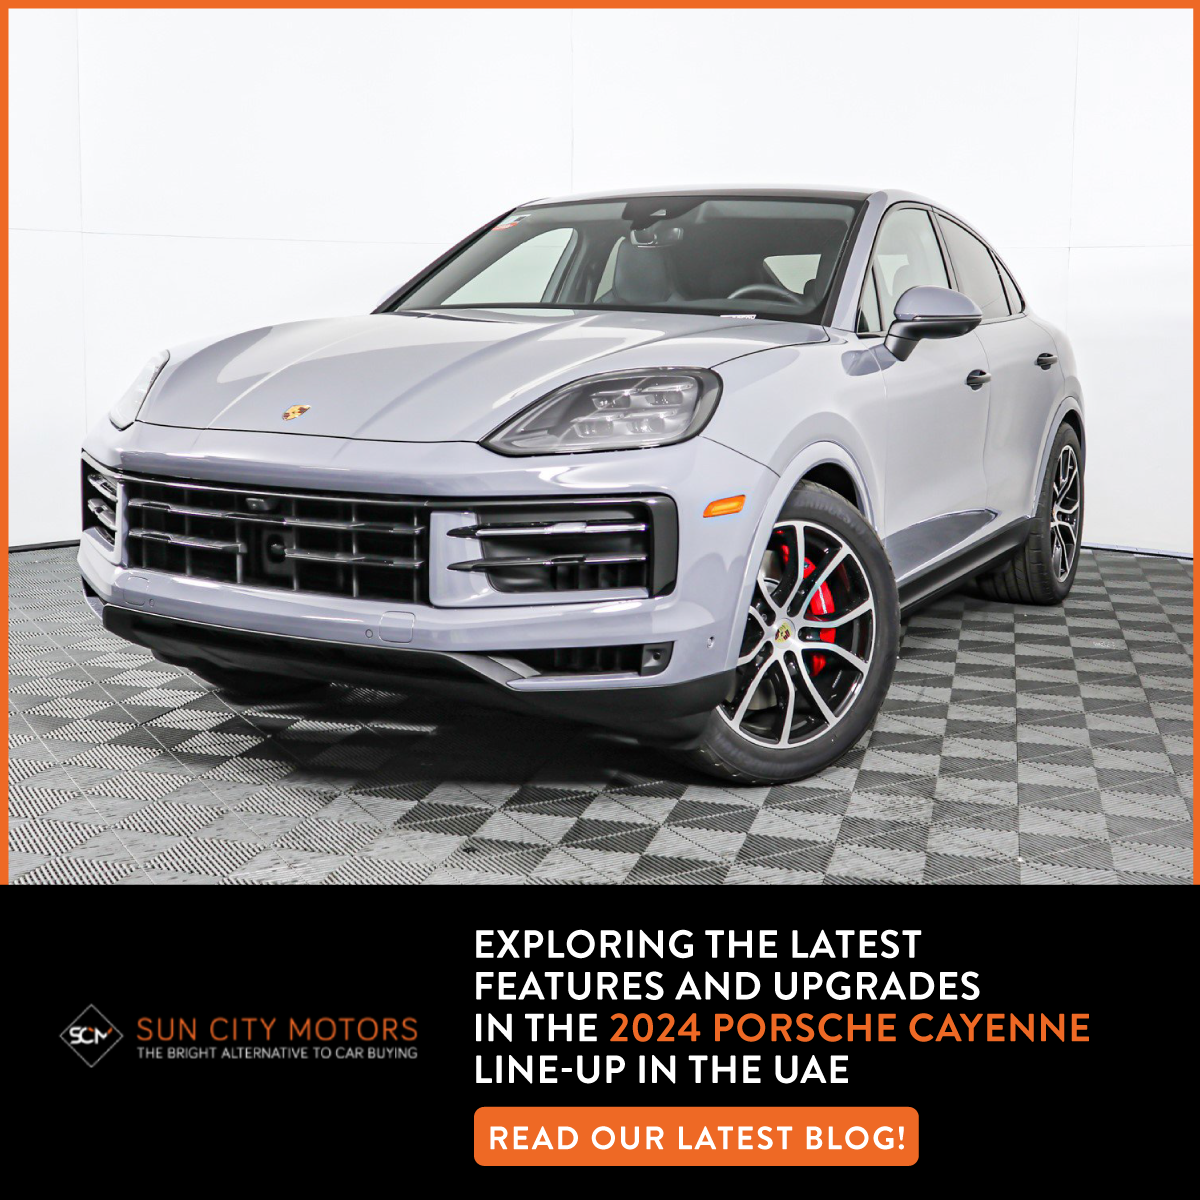 2024 Porsche Cayenne Line-up in the UAE